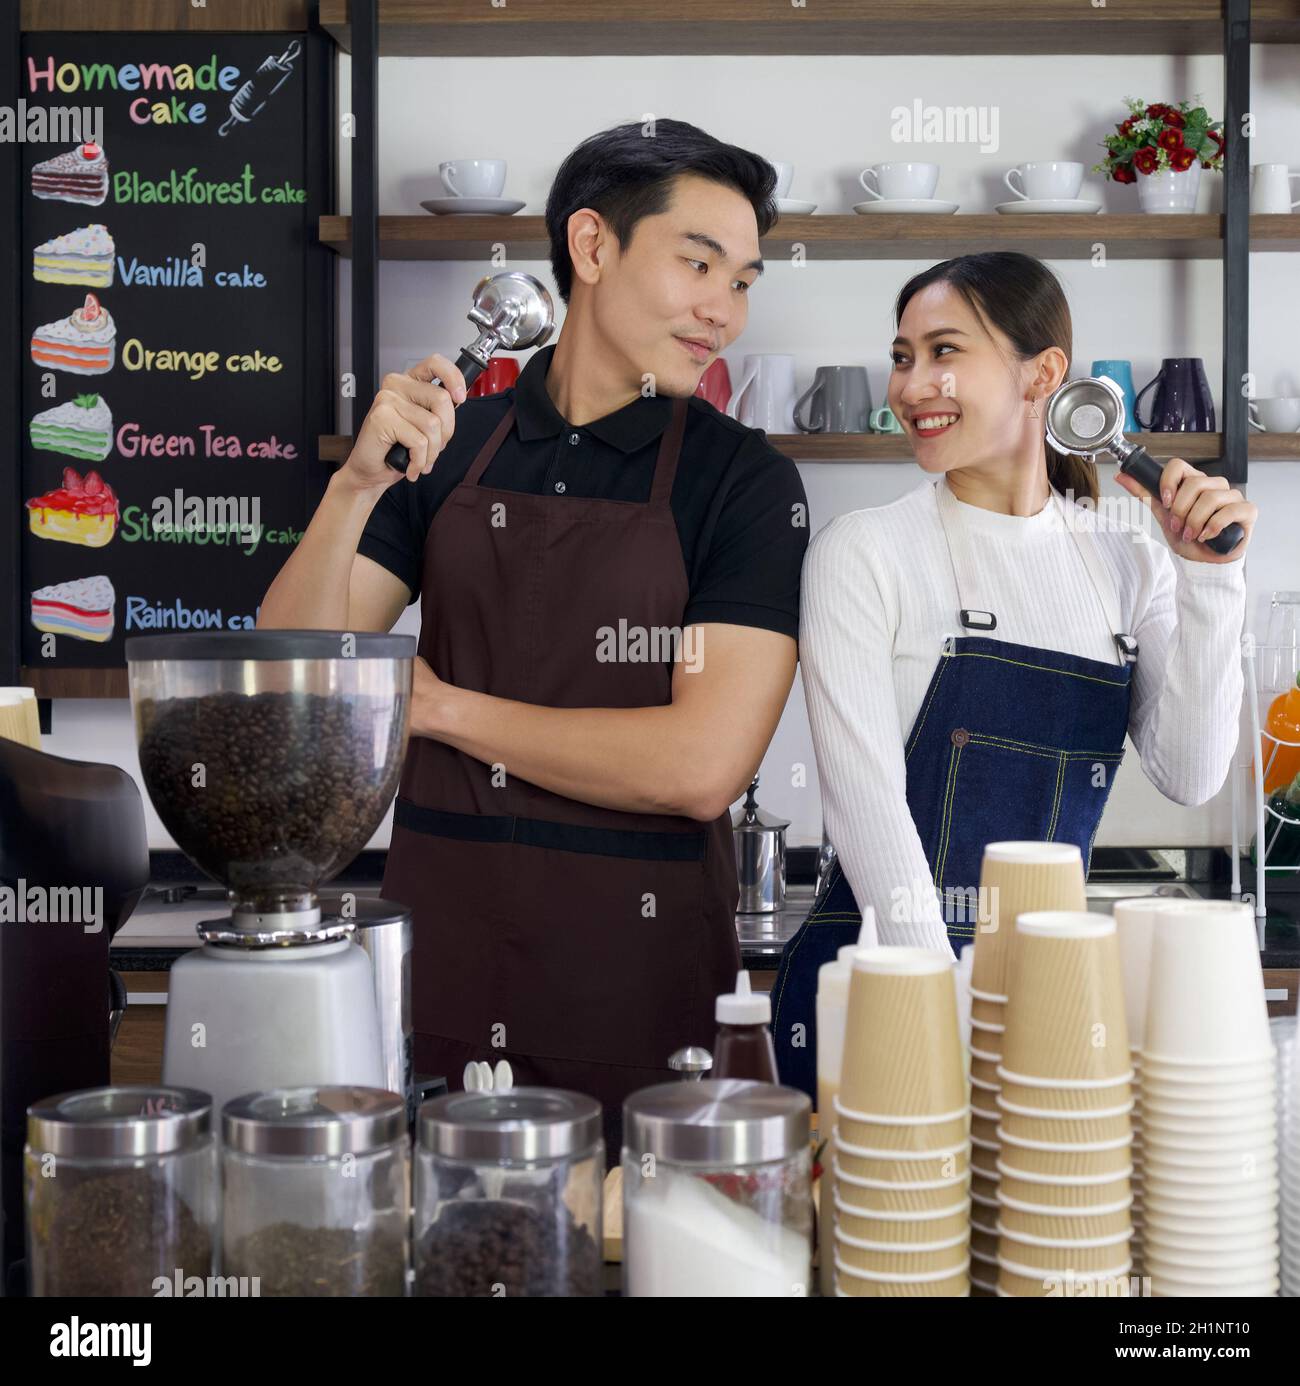 El tendero y el barista que sostiene Espresso Machine Portafters con una sonrisa. Ambiente matutino en una cafetería. Foto de stock